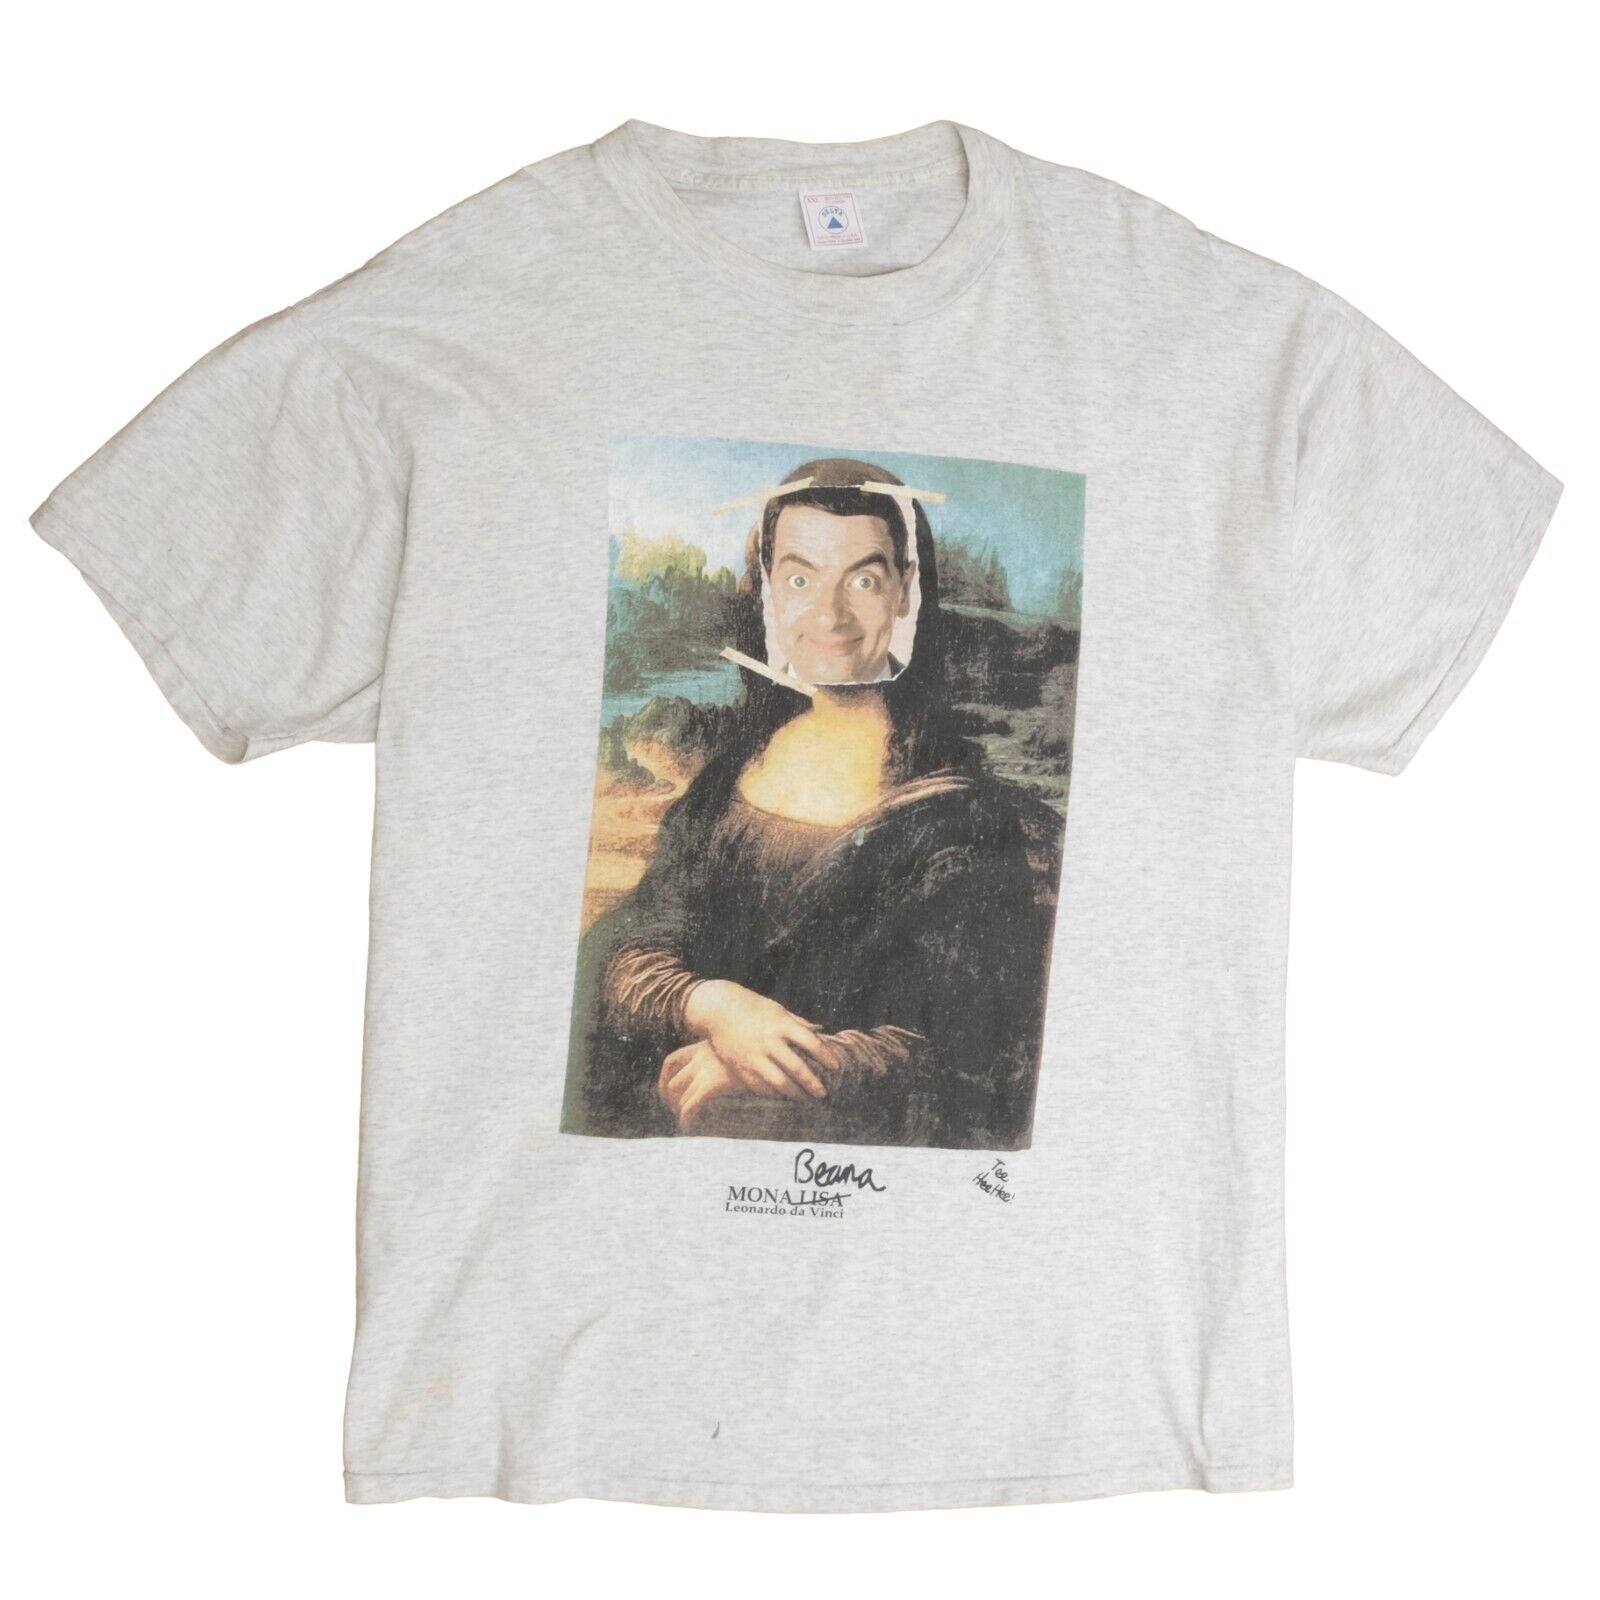 山田のメルカリ出品90s モナビーン Mr Bean Mona Lisa パロディtシャツ XL